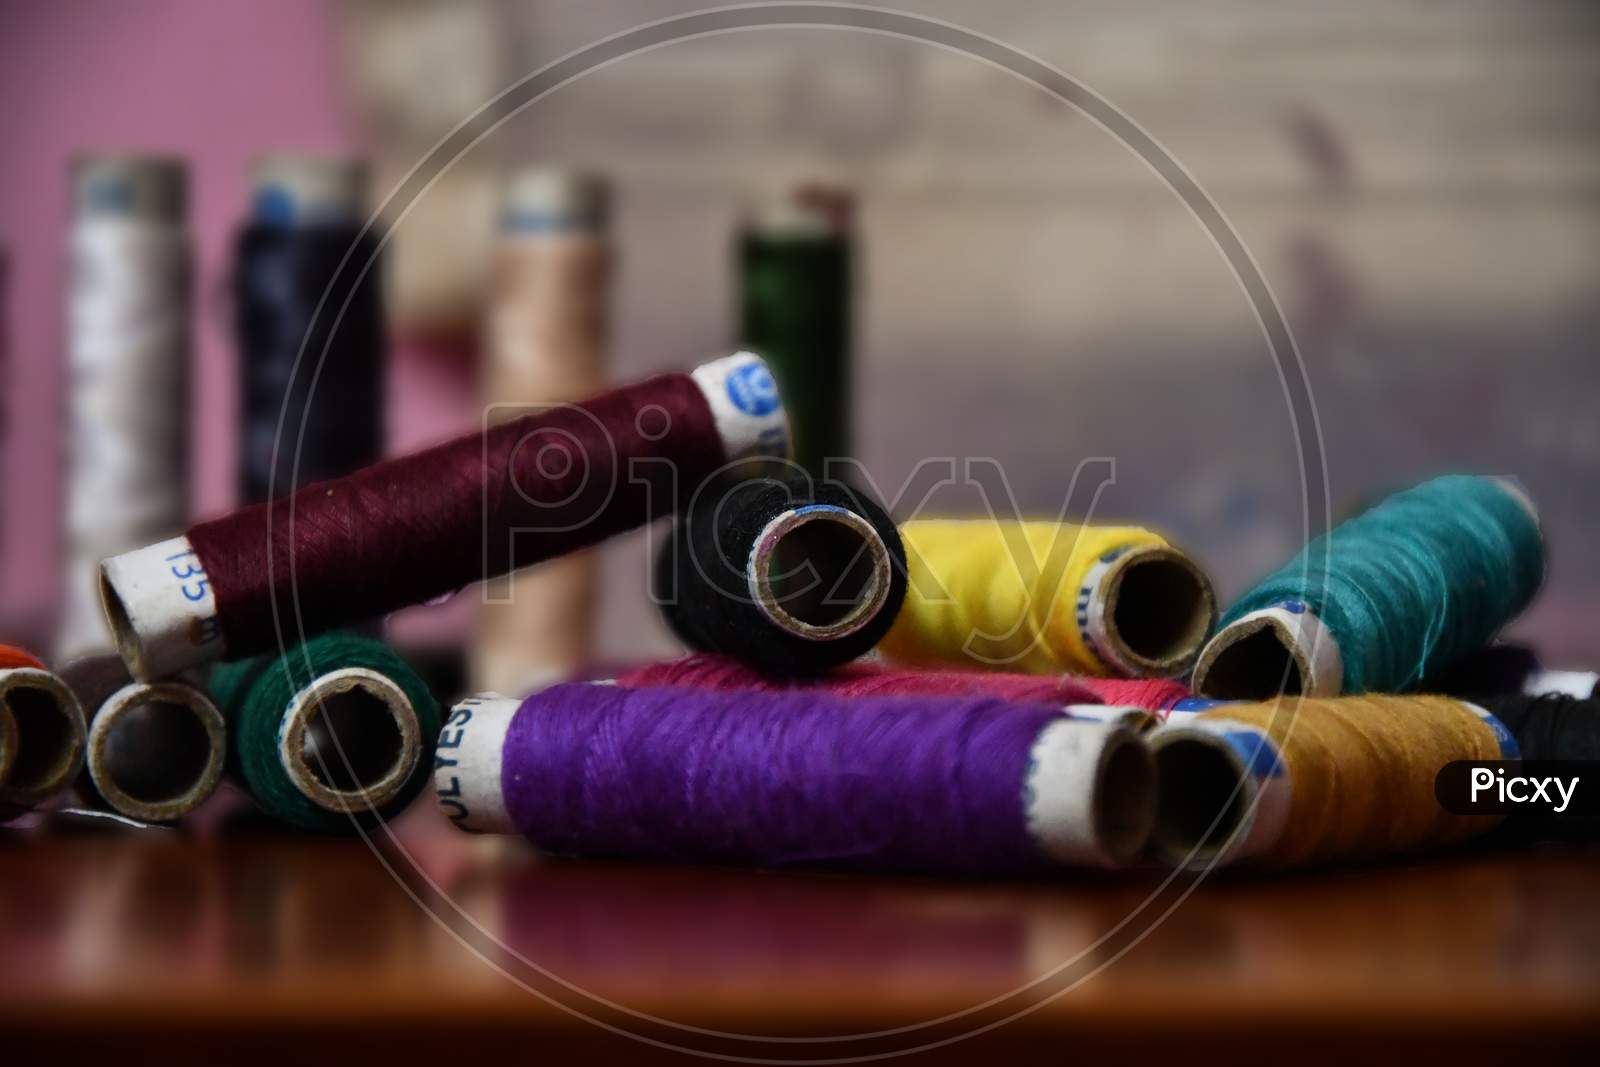 woolen thread